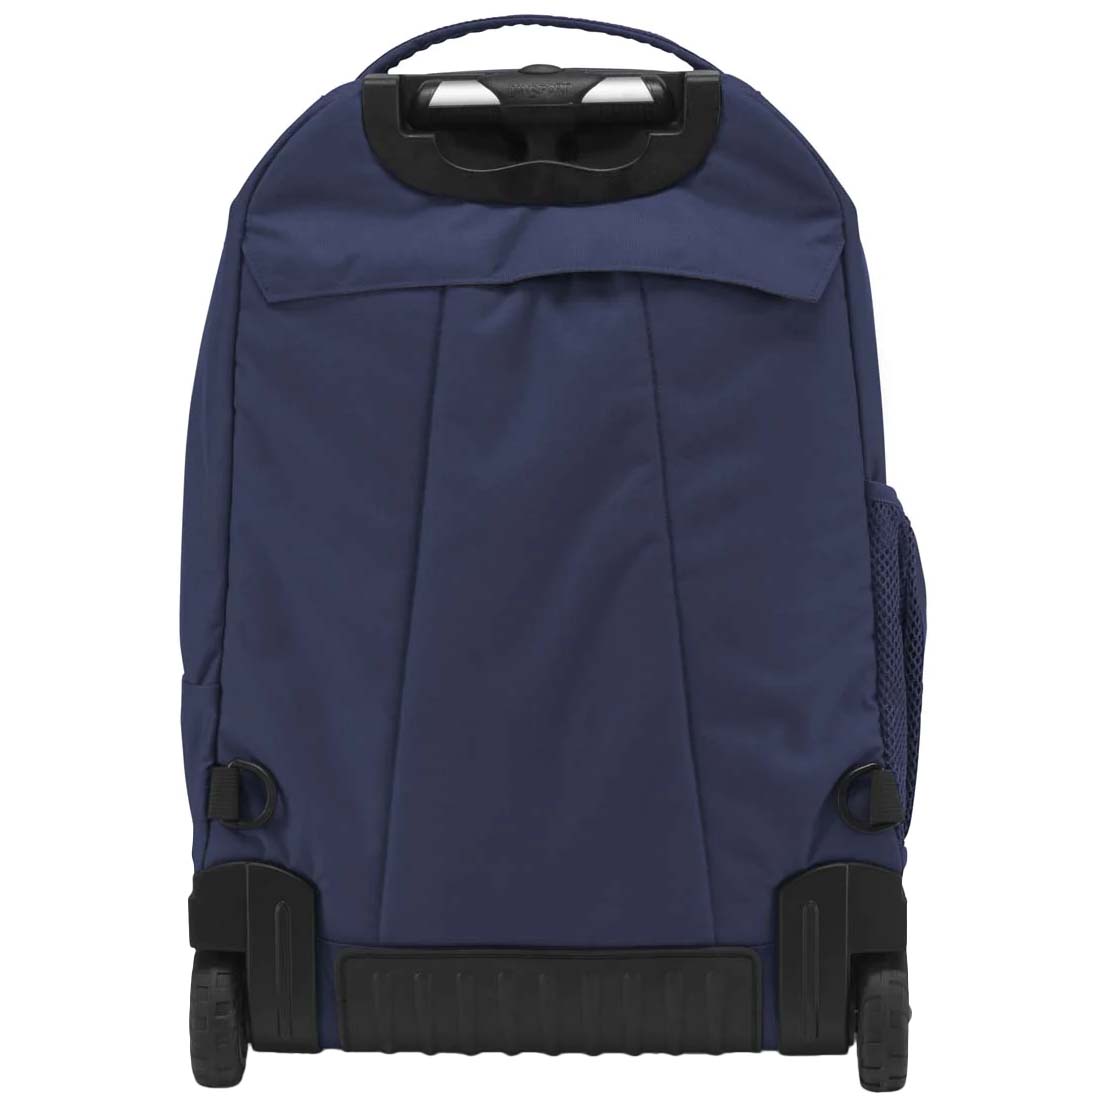 JanSport Driver 8 Backpack/Wheeled Travel Bag